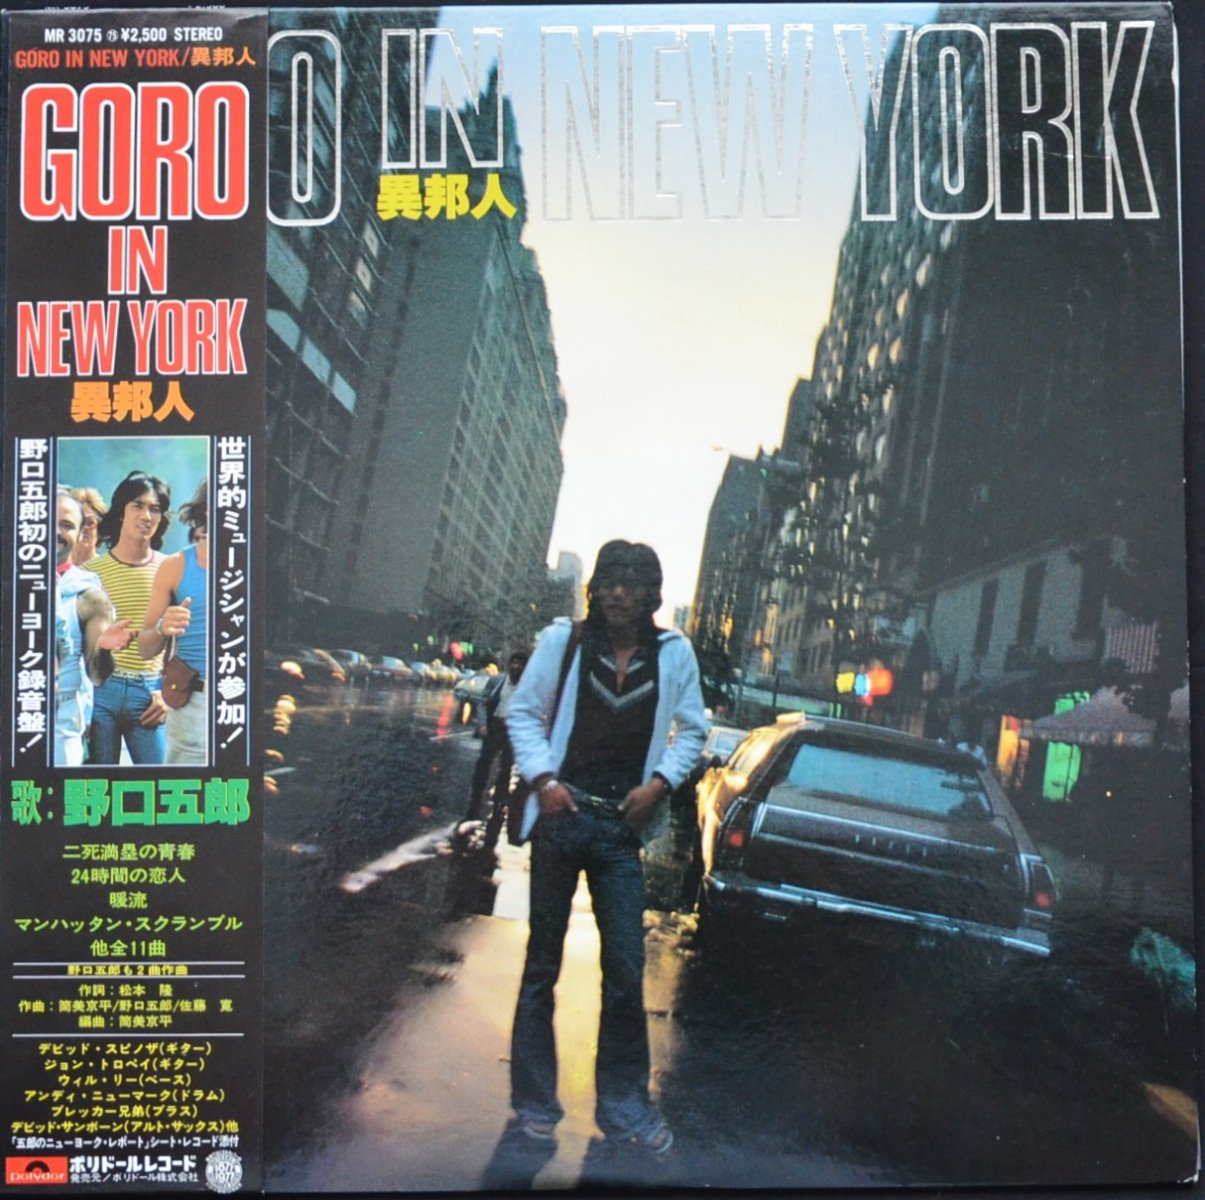 セール品 野口五郎 GORO THE BEST '88 LPレコード